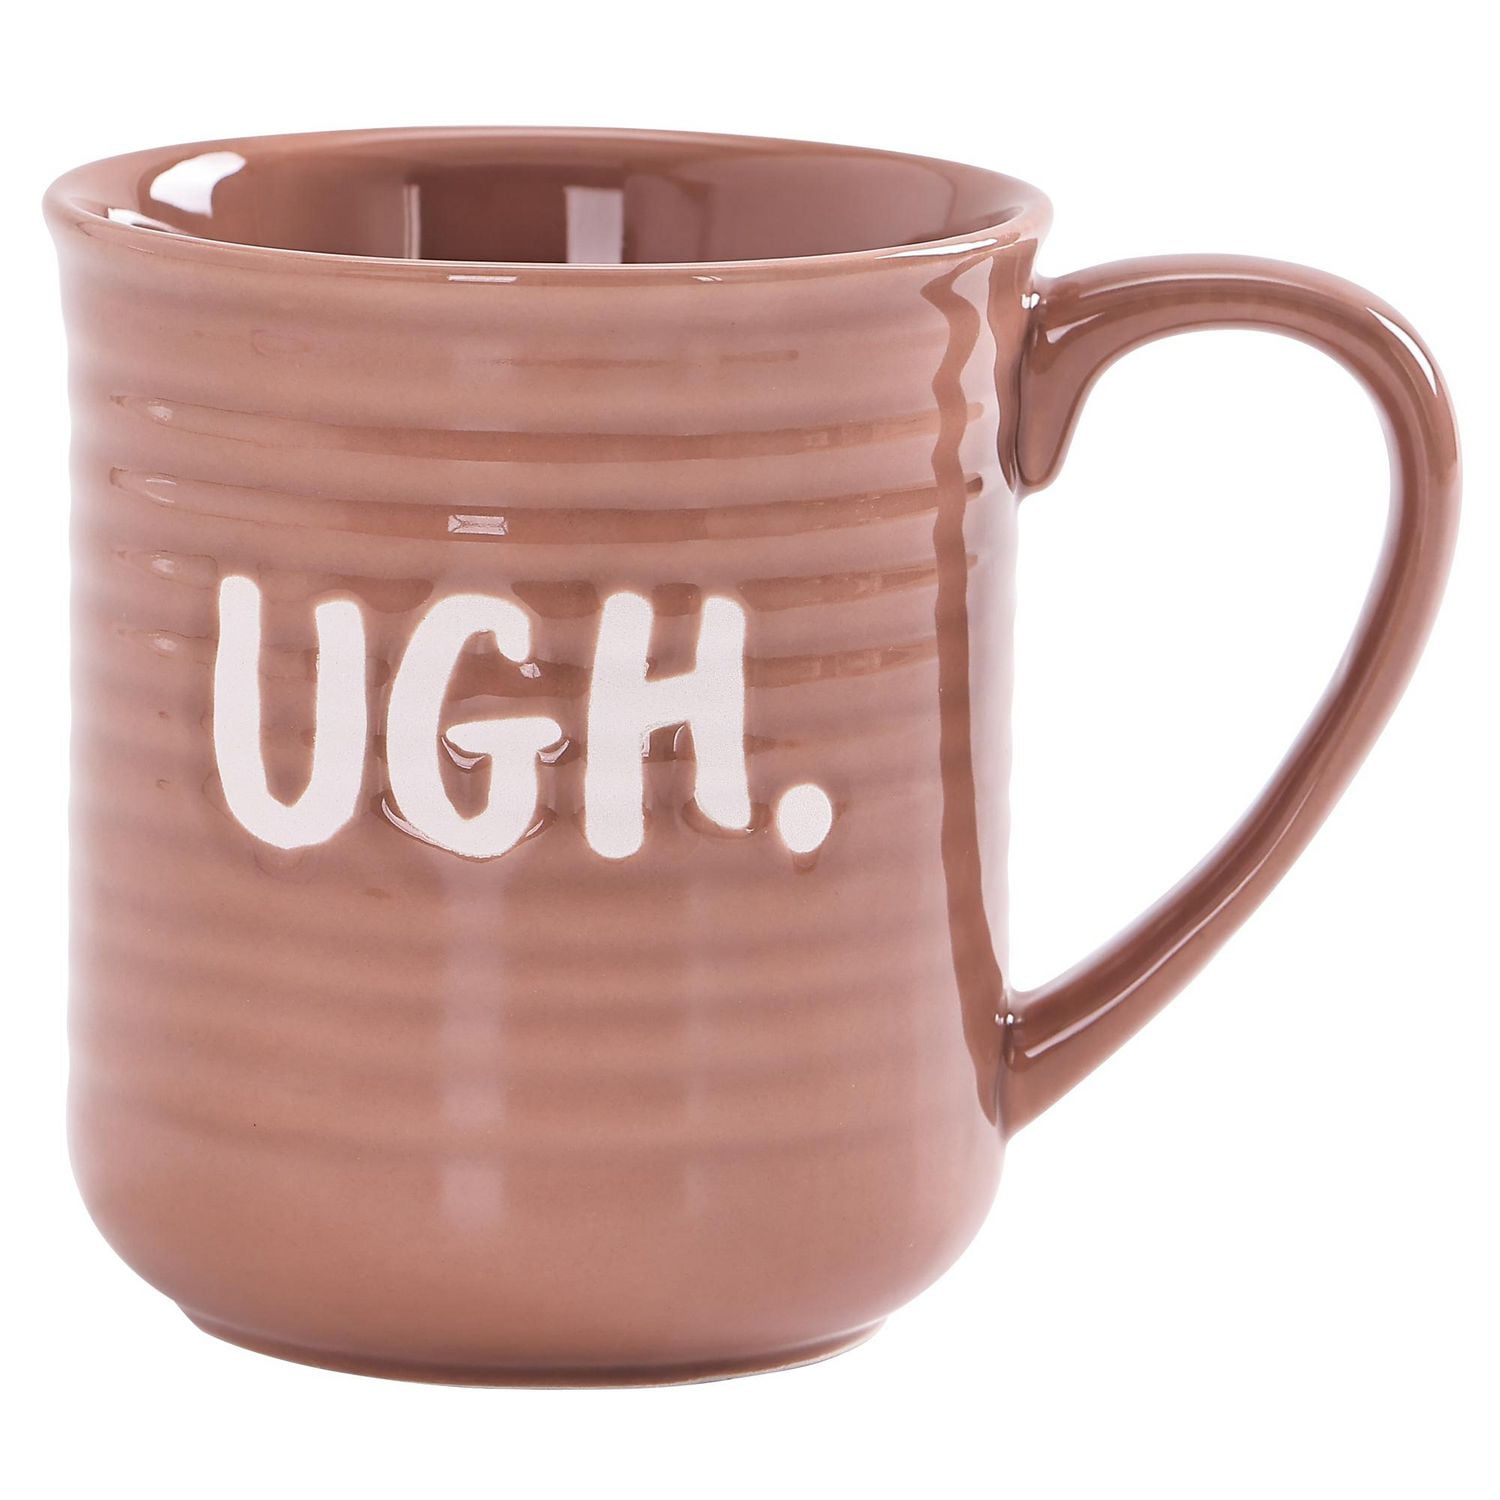 Mainstays Brown UGH Ceramic Mug, 16.91 oz, 1 piece, 500ml, ceramic